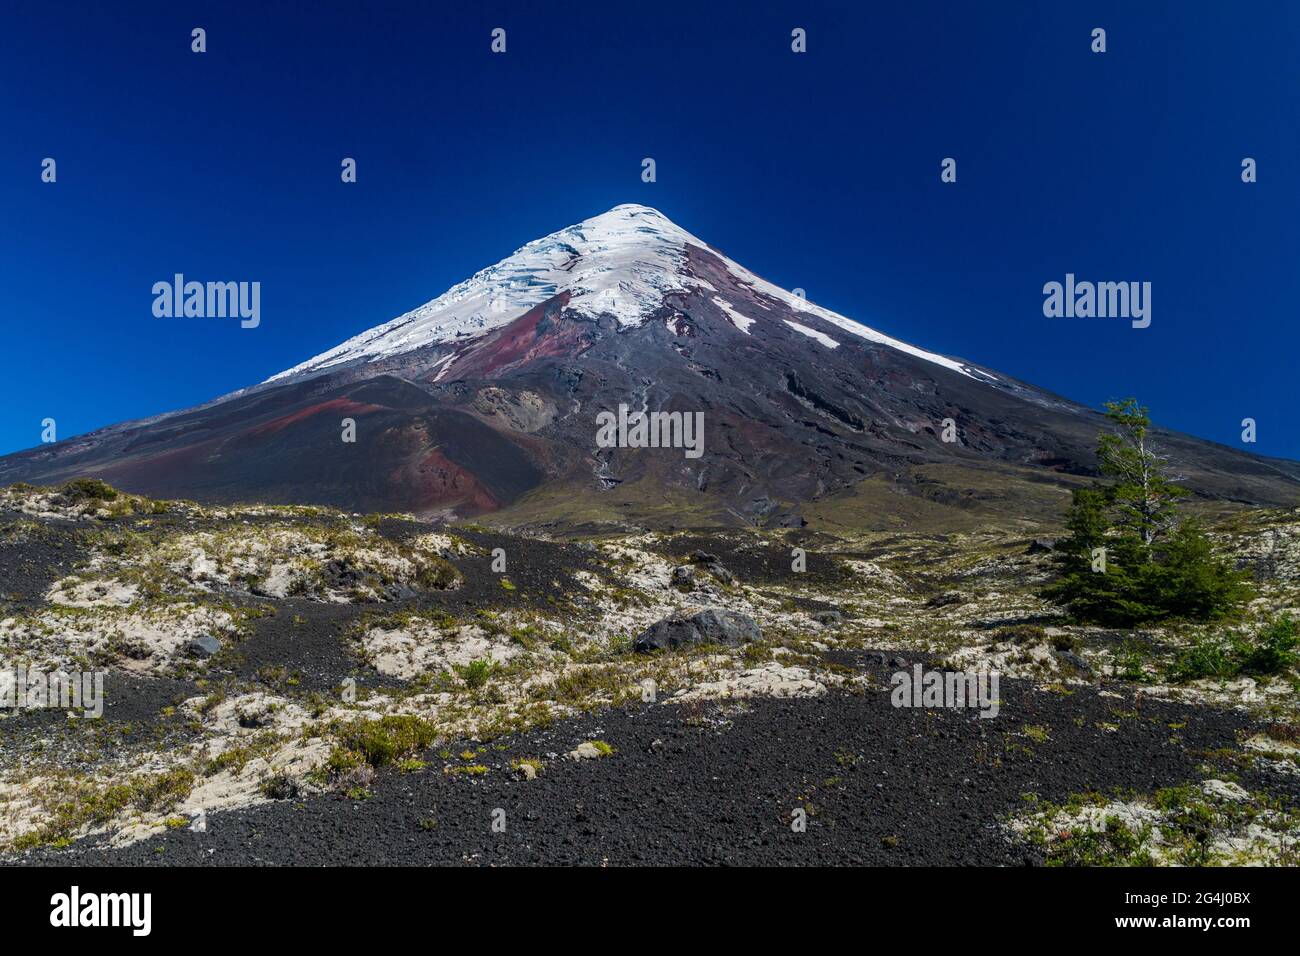 View of Osorno volcano, Chile Stock Photo